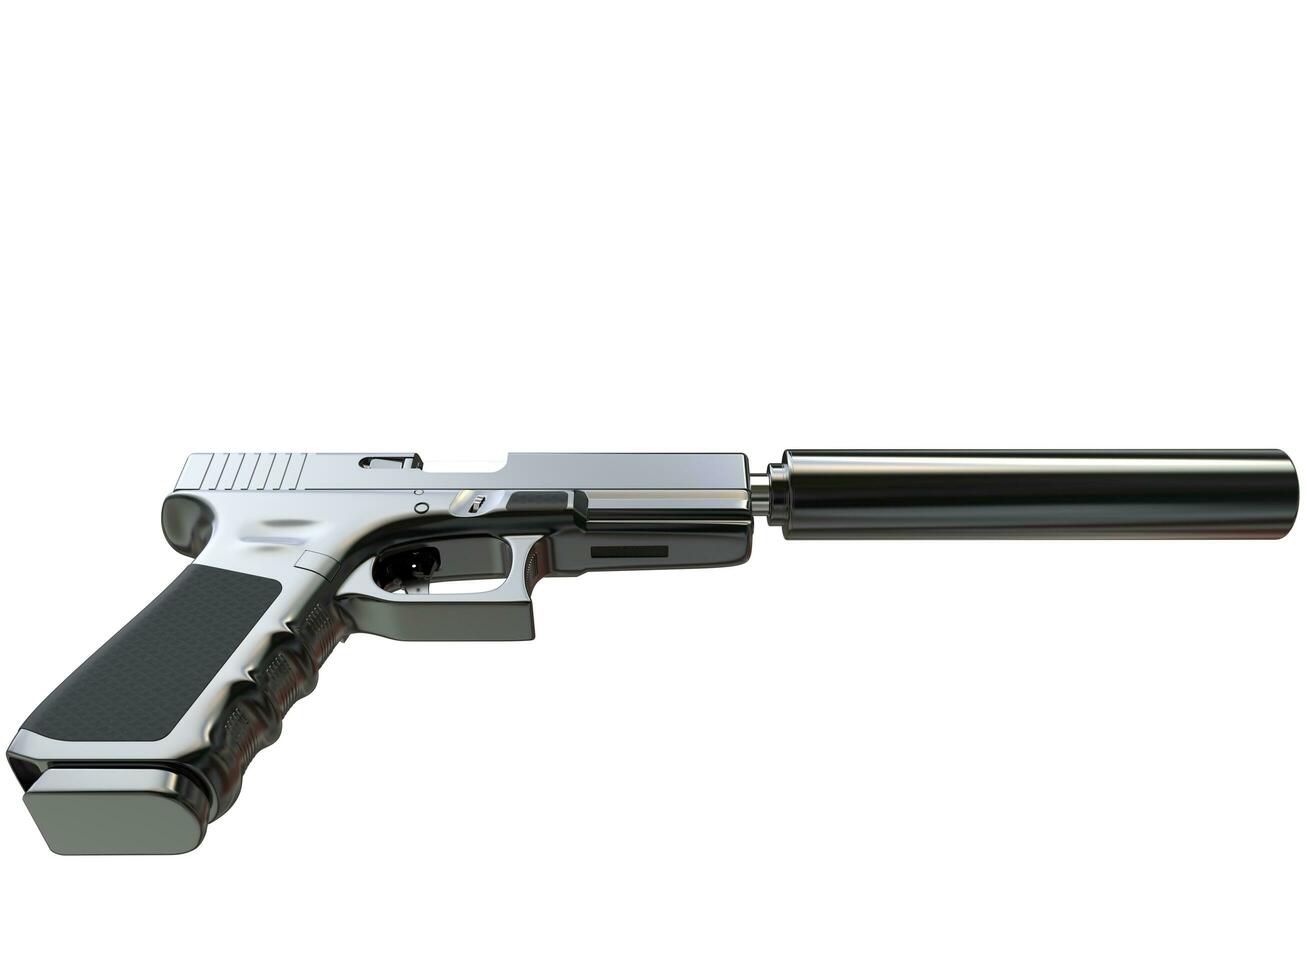 semi - automatisch modern tactisch handgeweer met geluiddemper - zwart chroom - top naar beneden visie foto